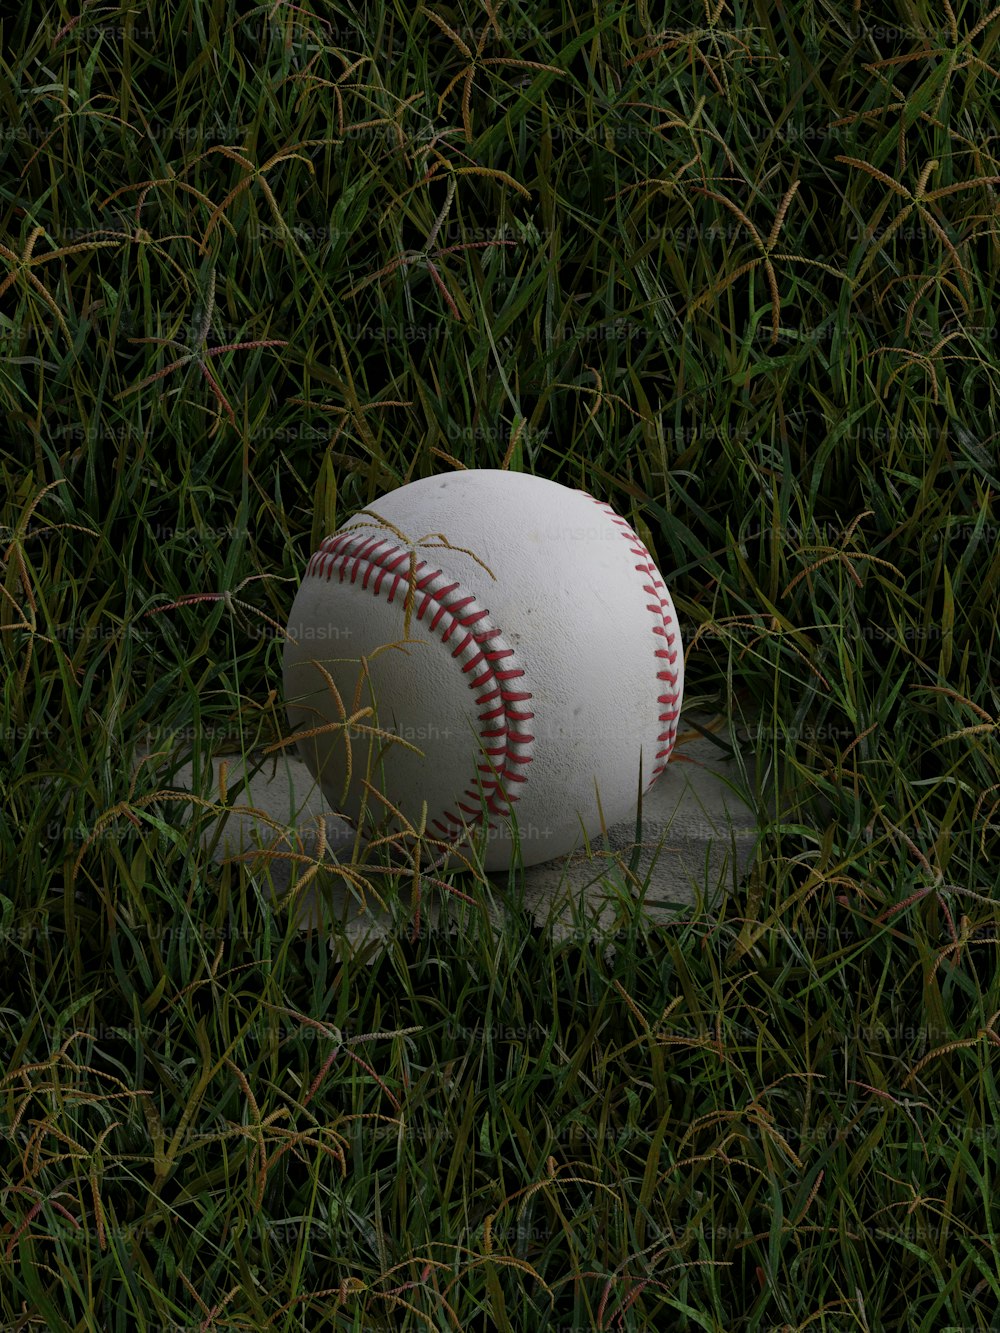 Una pelota de béisbol acostada encima de una pelota de béisbol en la hierba